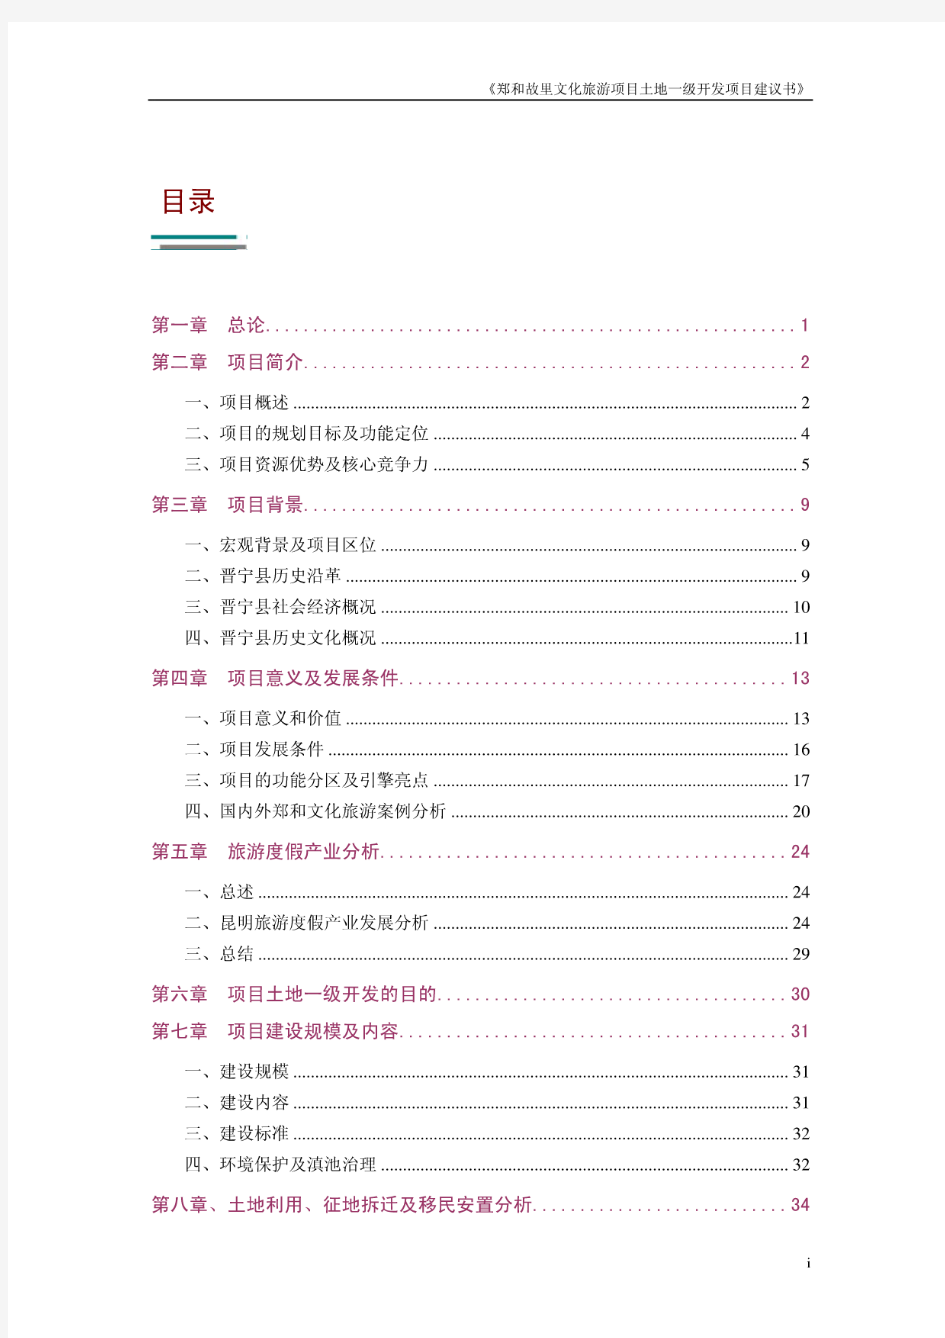 2011昆明晋宁郑和故里文化旅游项目开发整理项目建议书